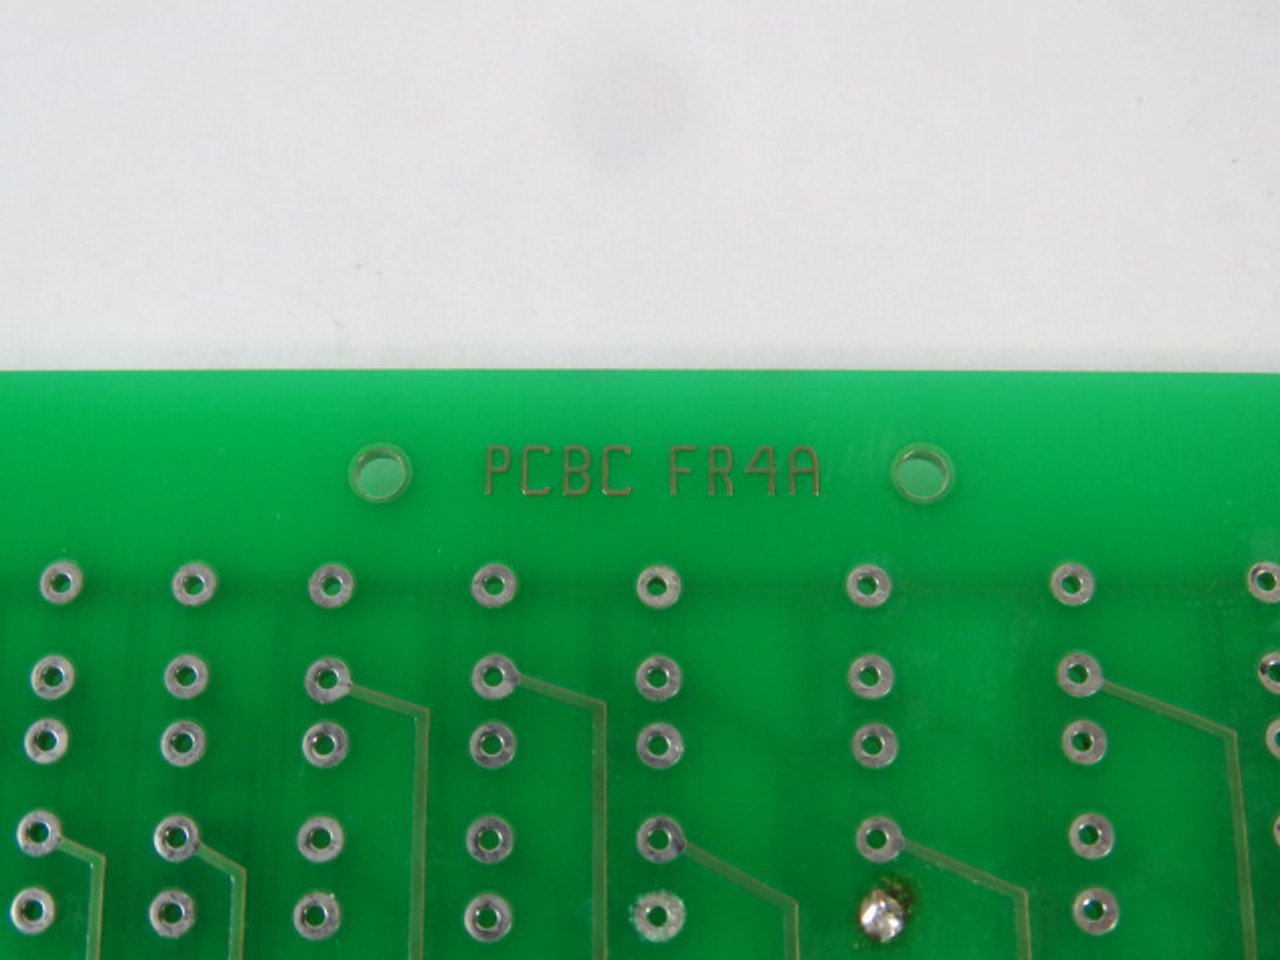 EDI PCBCFR4A Prototype Circuit Board USED